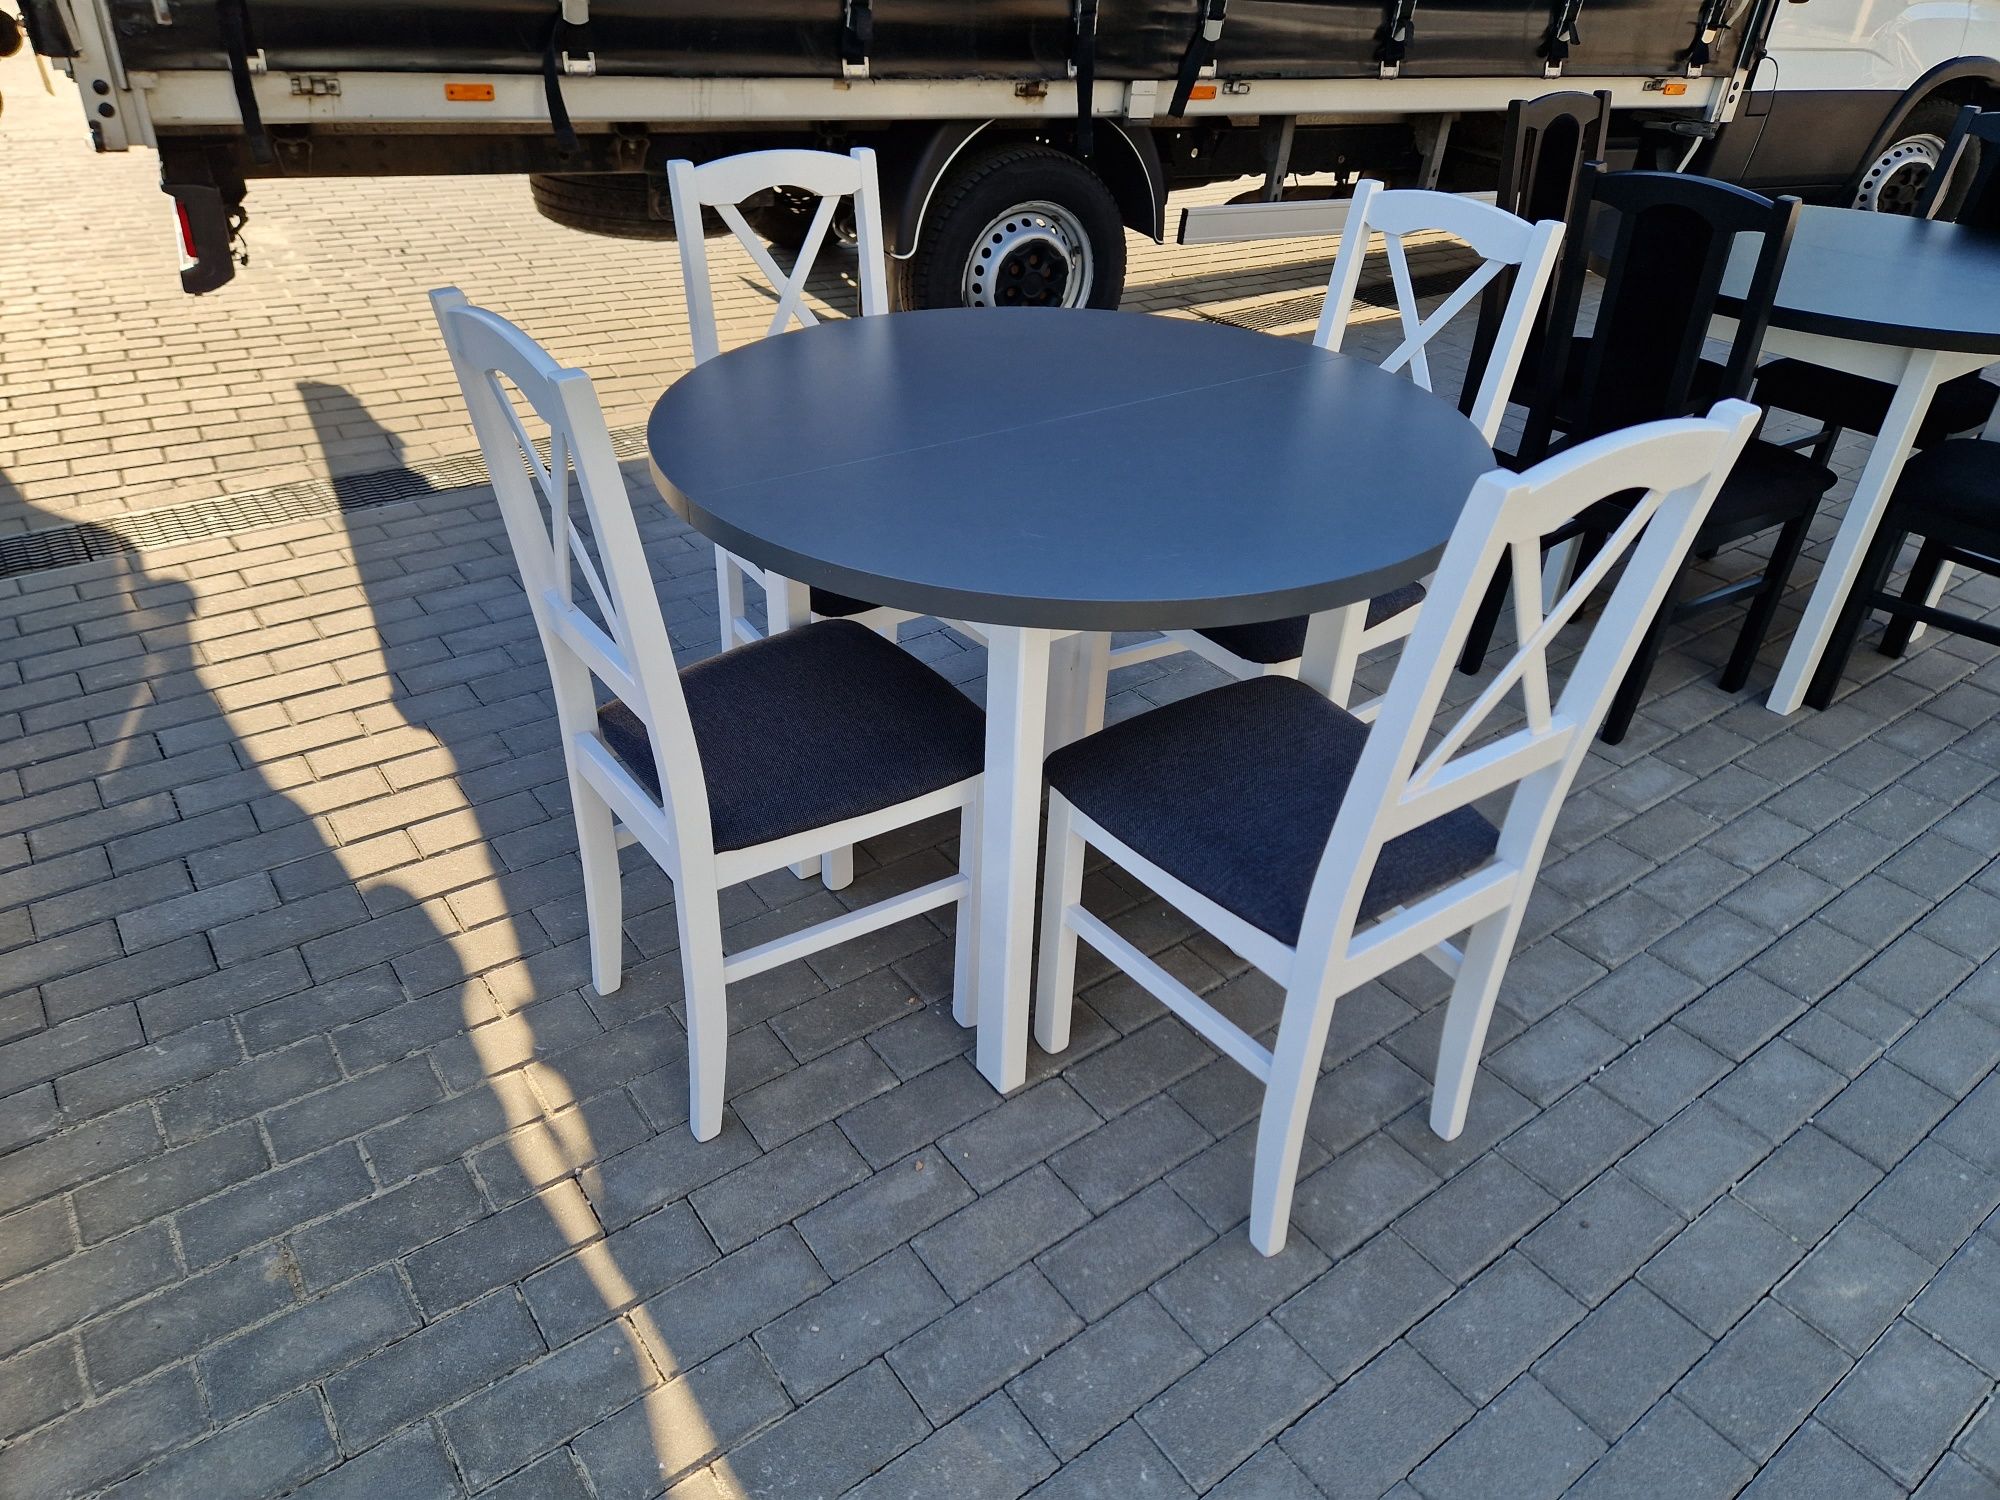 Nowe: Stół okrągły + 4 krzesła, bialy / blat grafit + grafit ( krzyż )